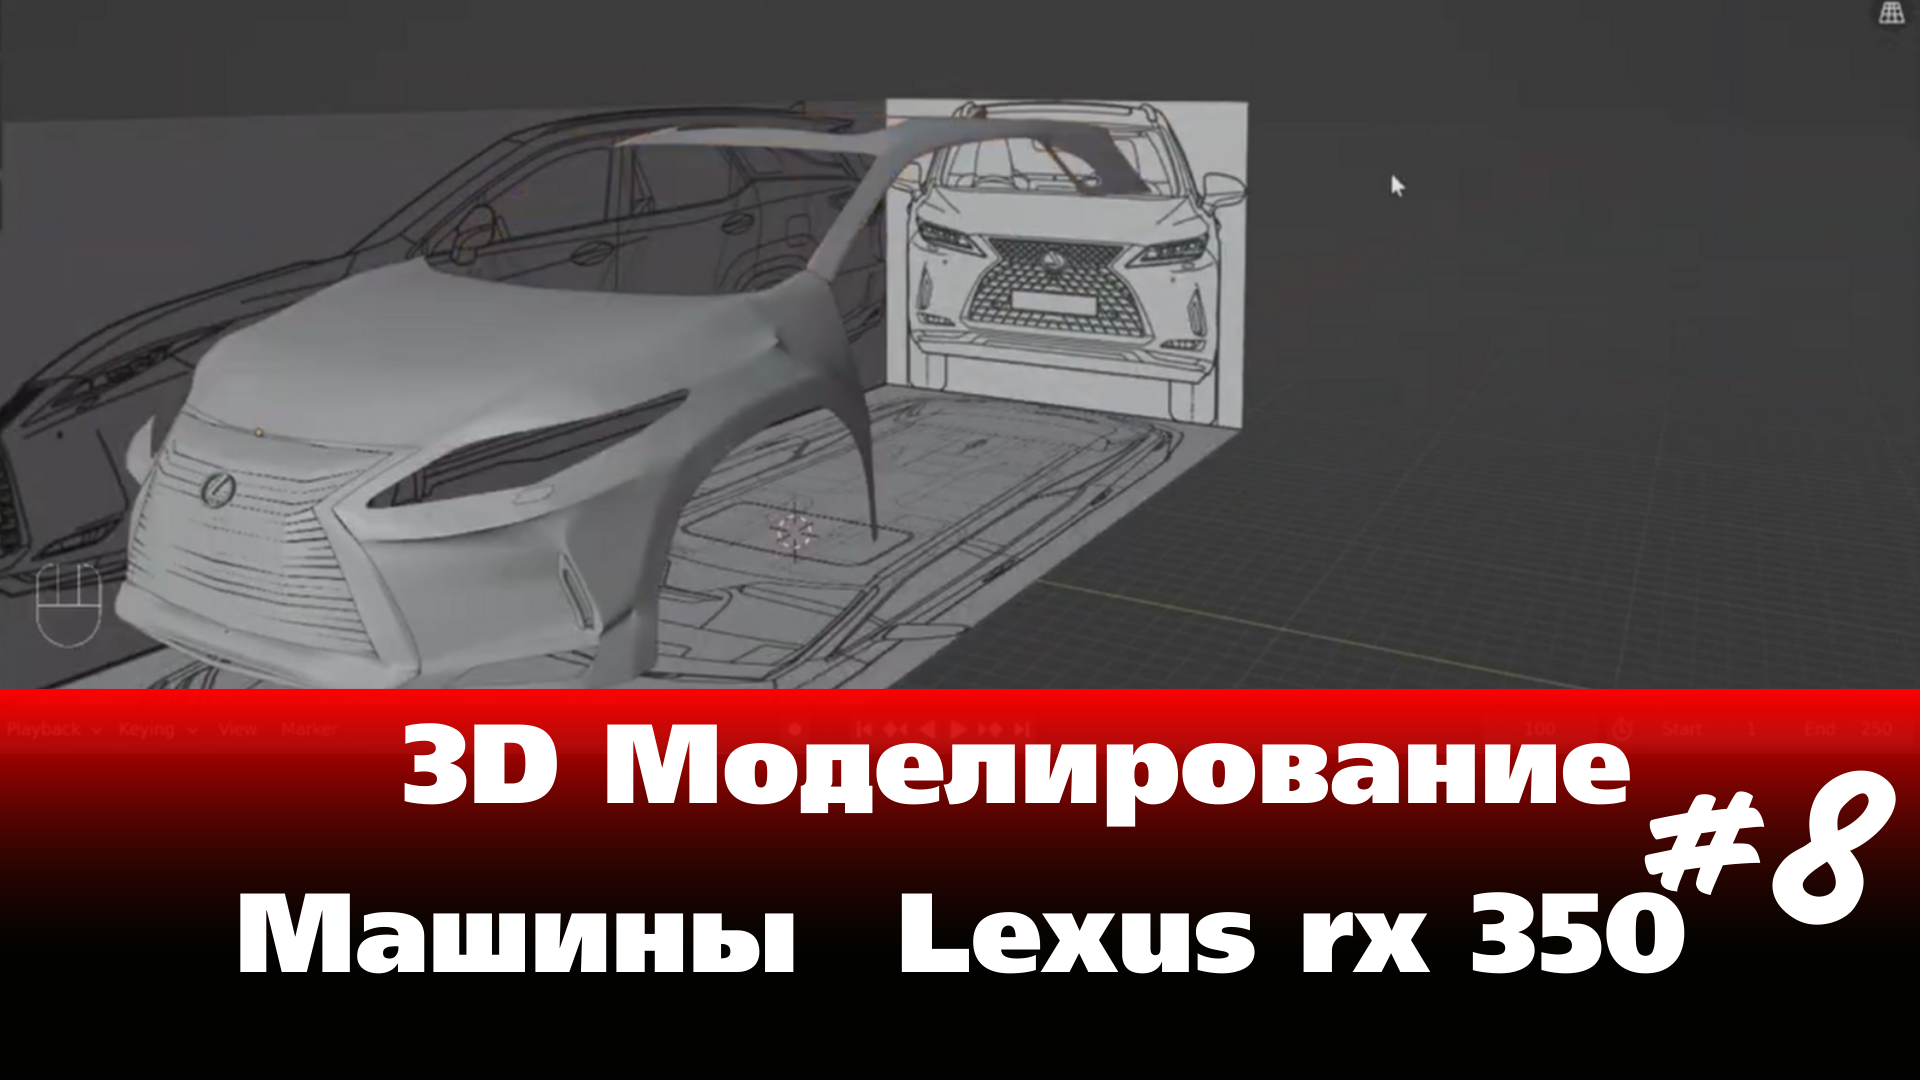 3D Моделирование Машины в Blender - Lexus rx 350 часть 8 #Blender